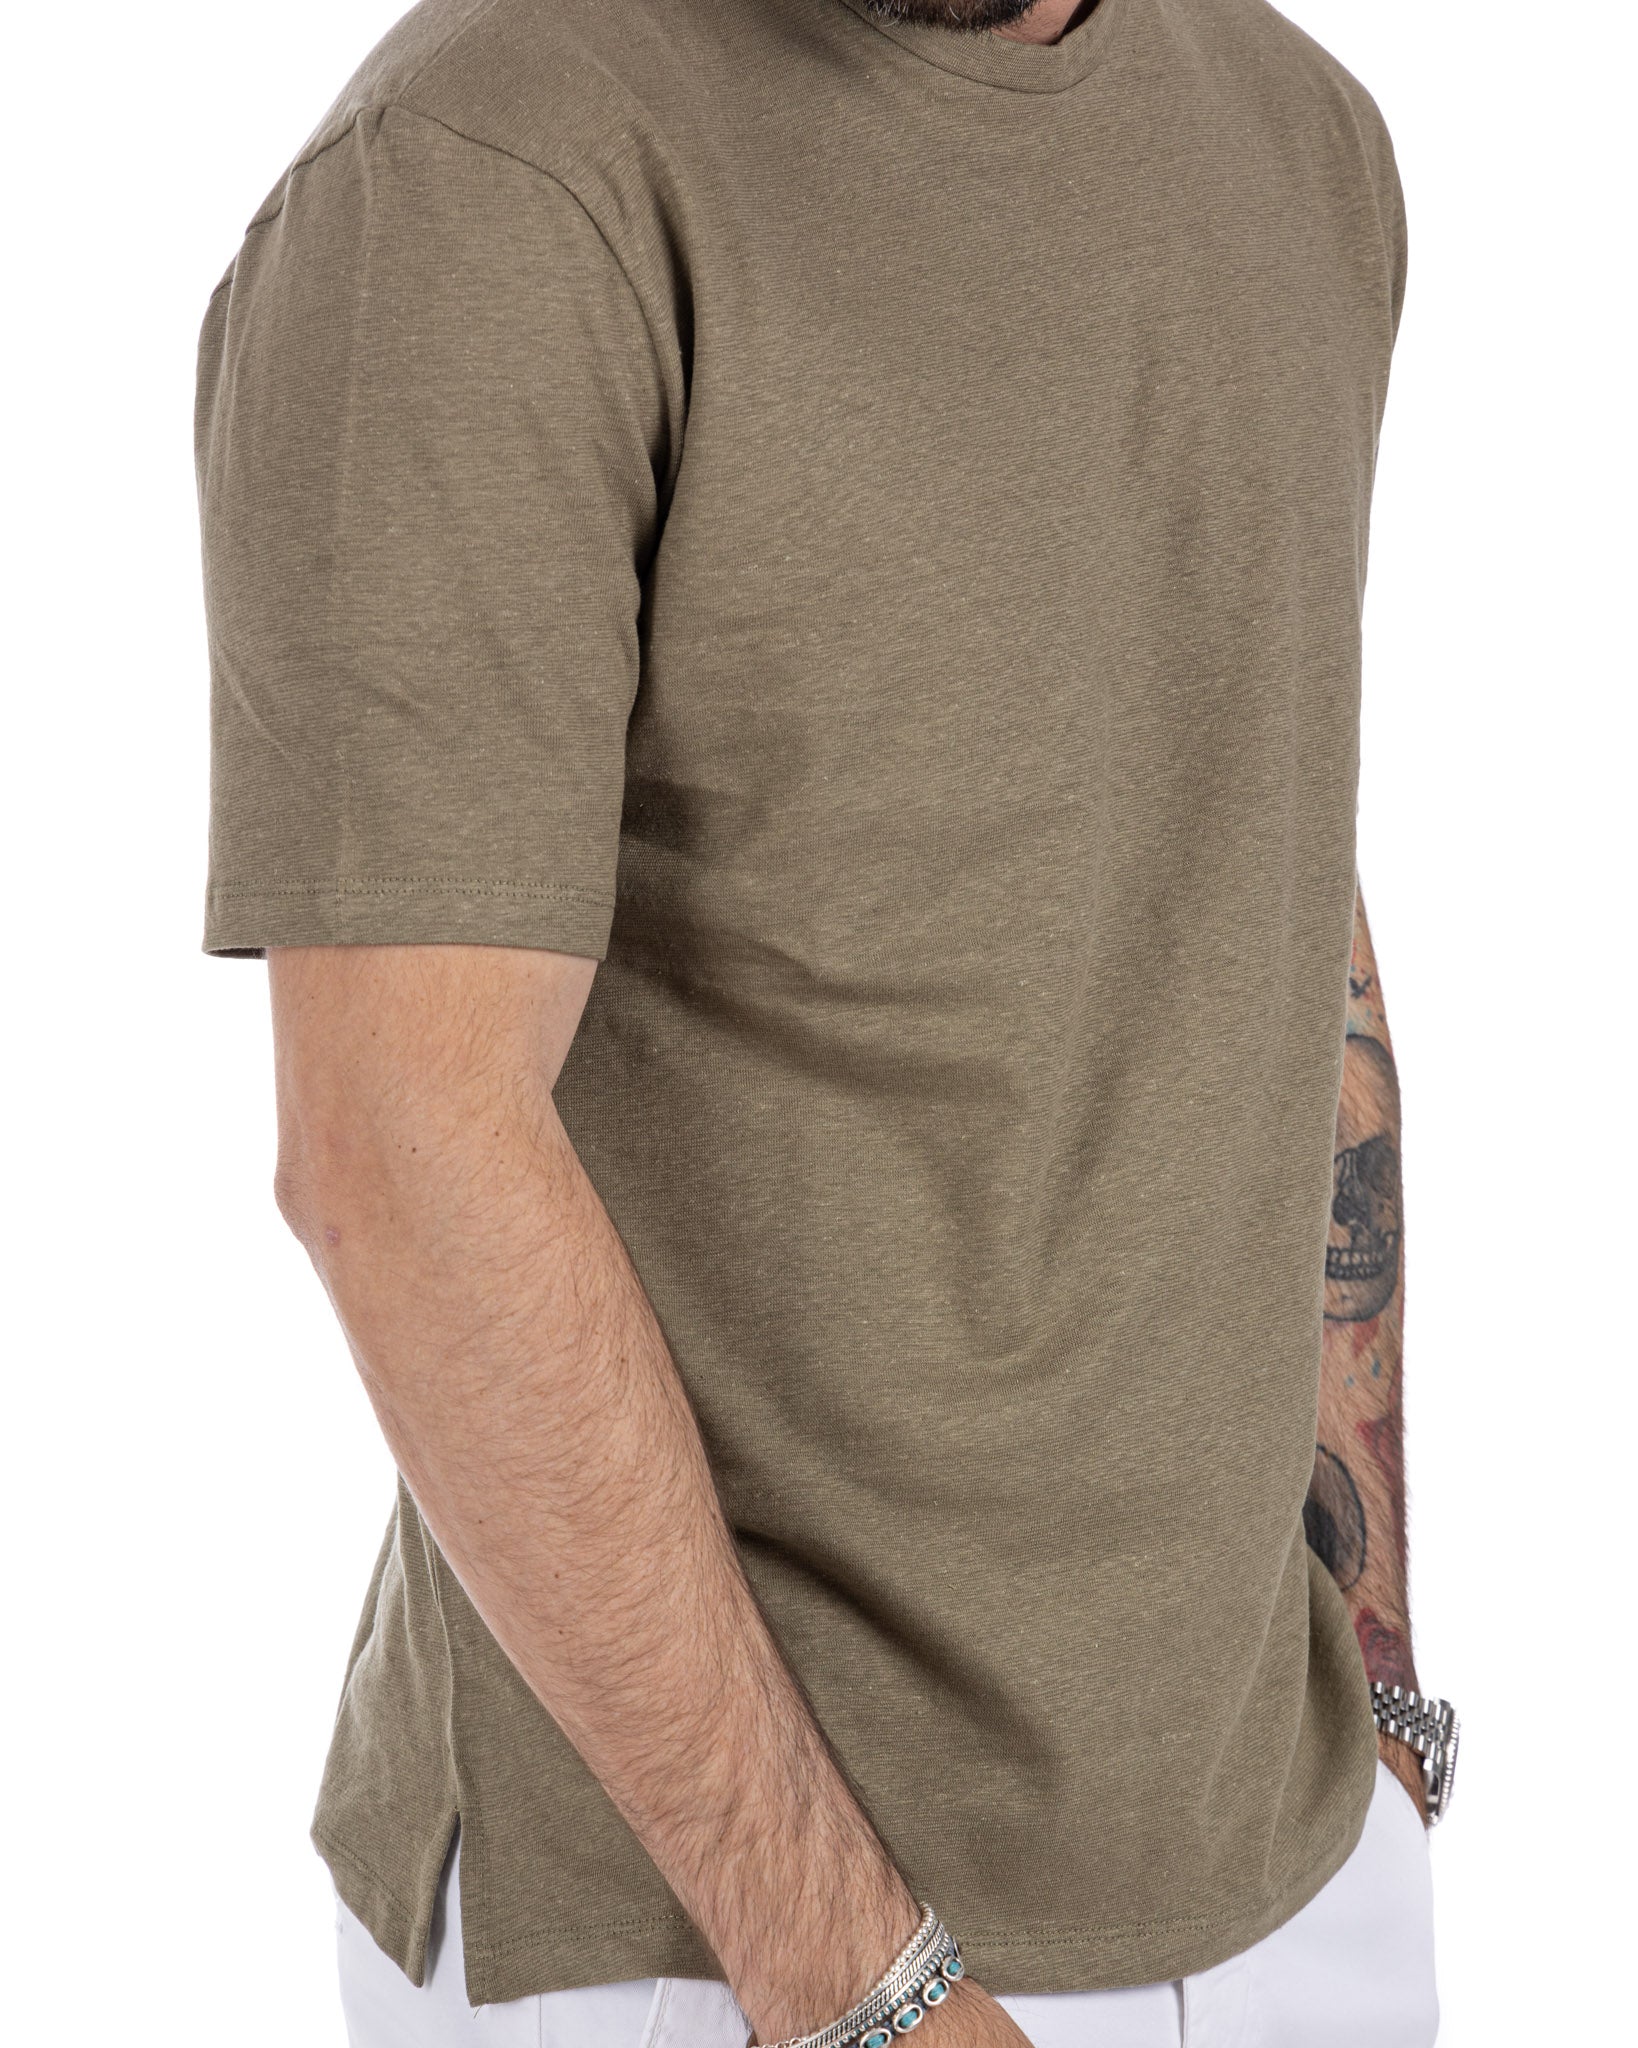 Favignana - t-shirt in lino militare